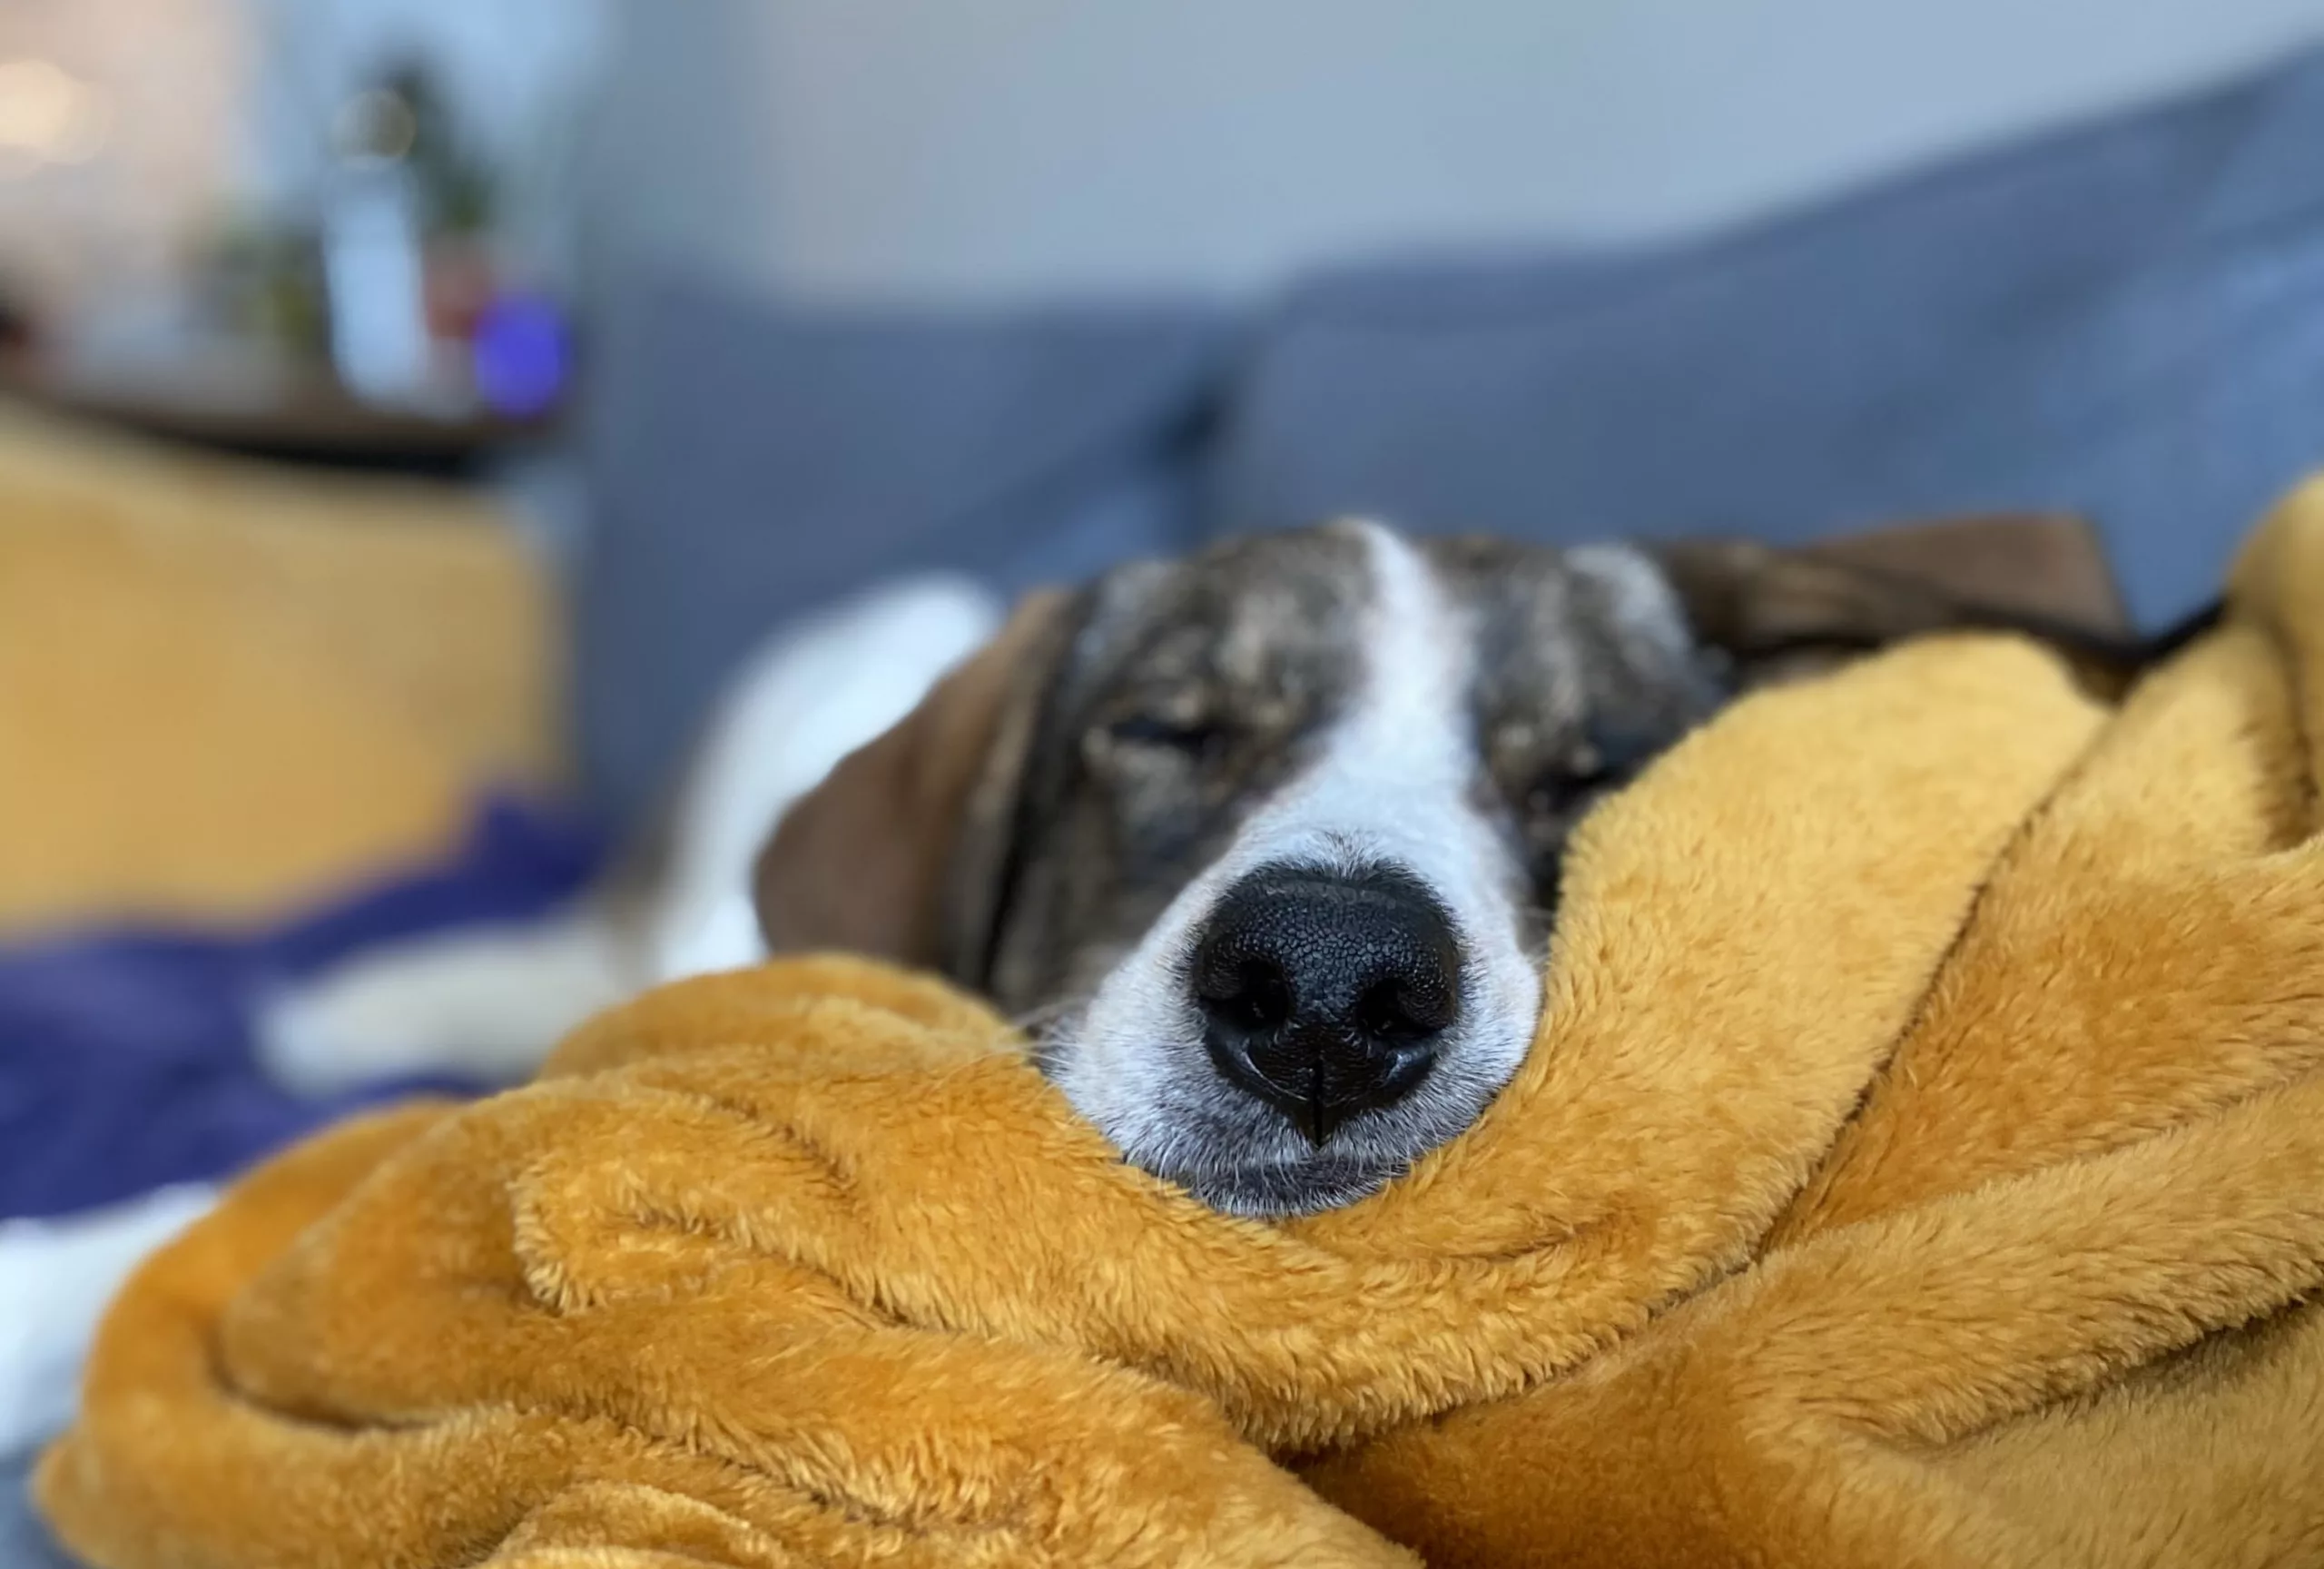 Dog sleeping on yellow blanket